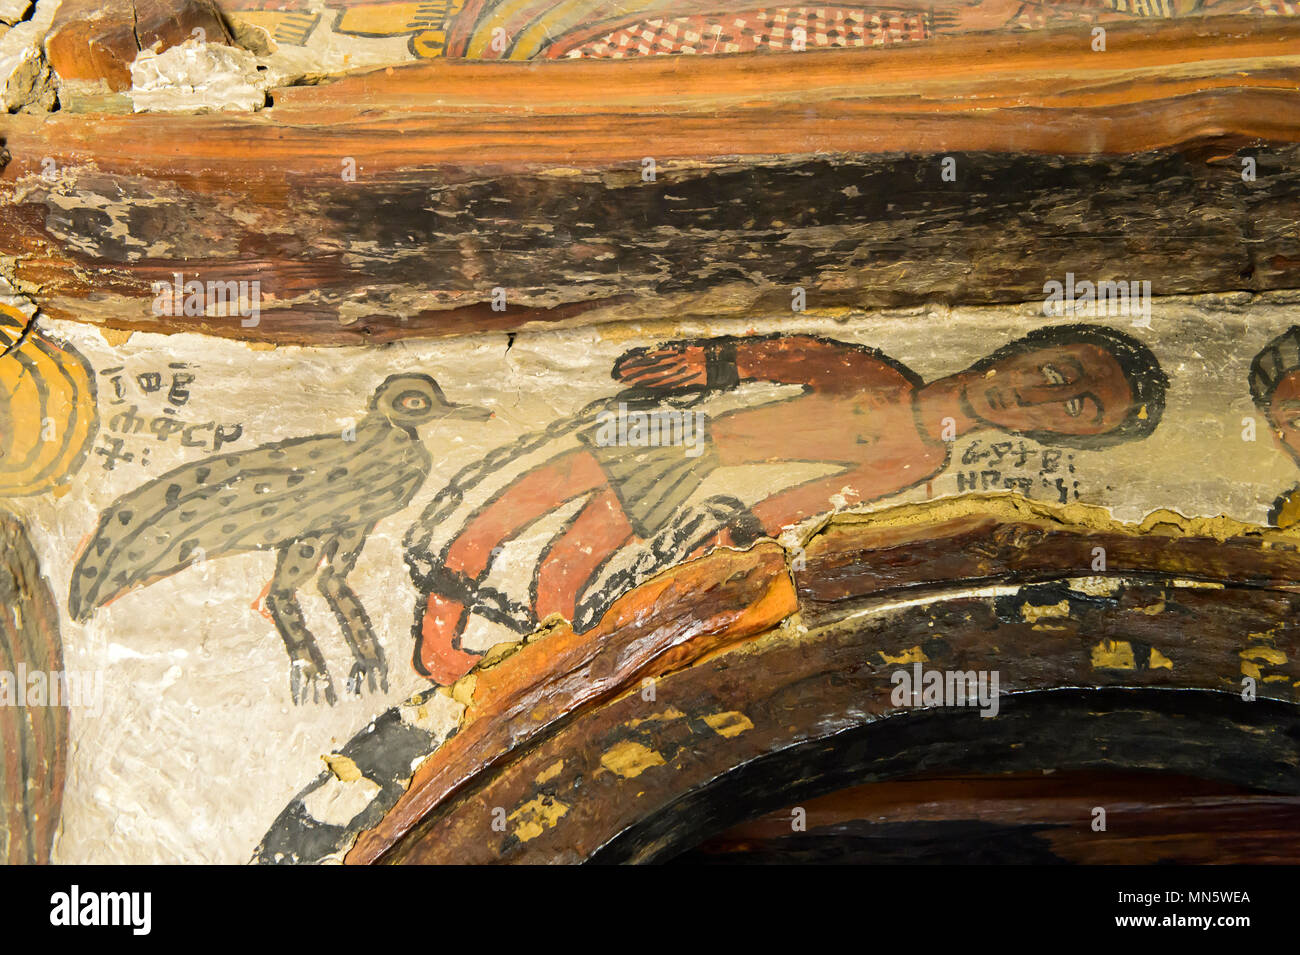 La crucifixion de Jésus Christ, la répression du voleur impénitent Gestas, peinture dans l'église rupestres Petros et Paulus Melehayzengi,Ethiopie Banque D'Images